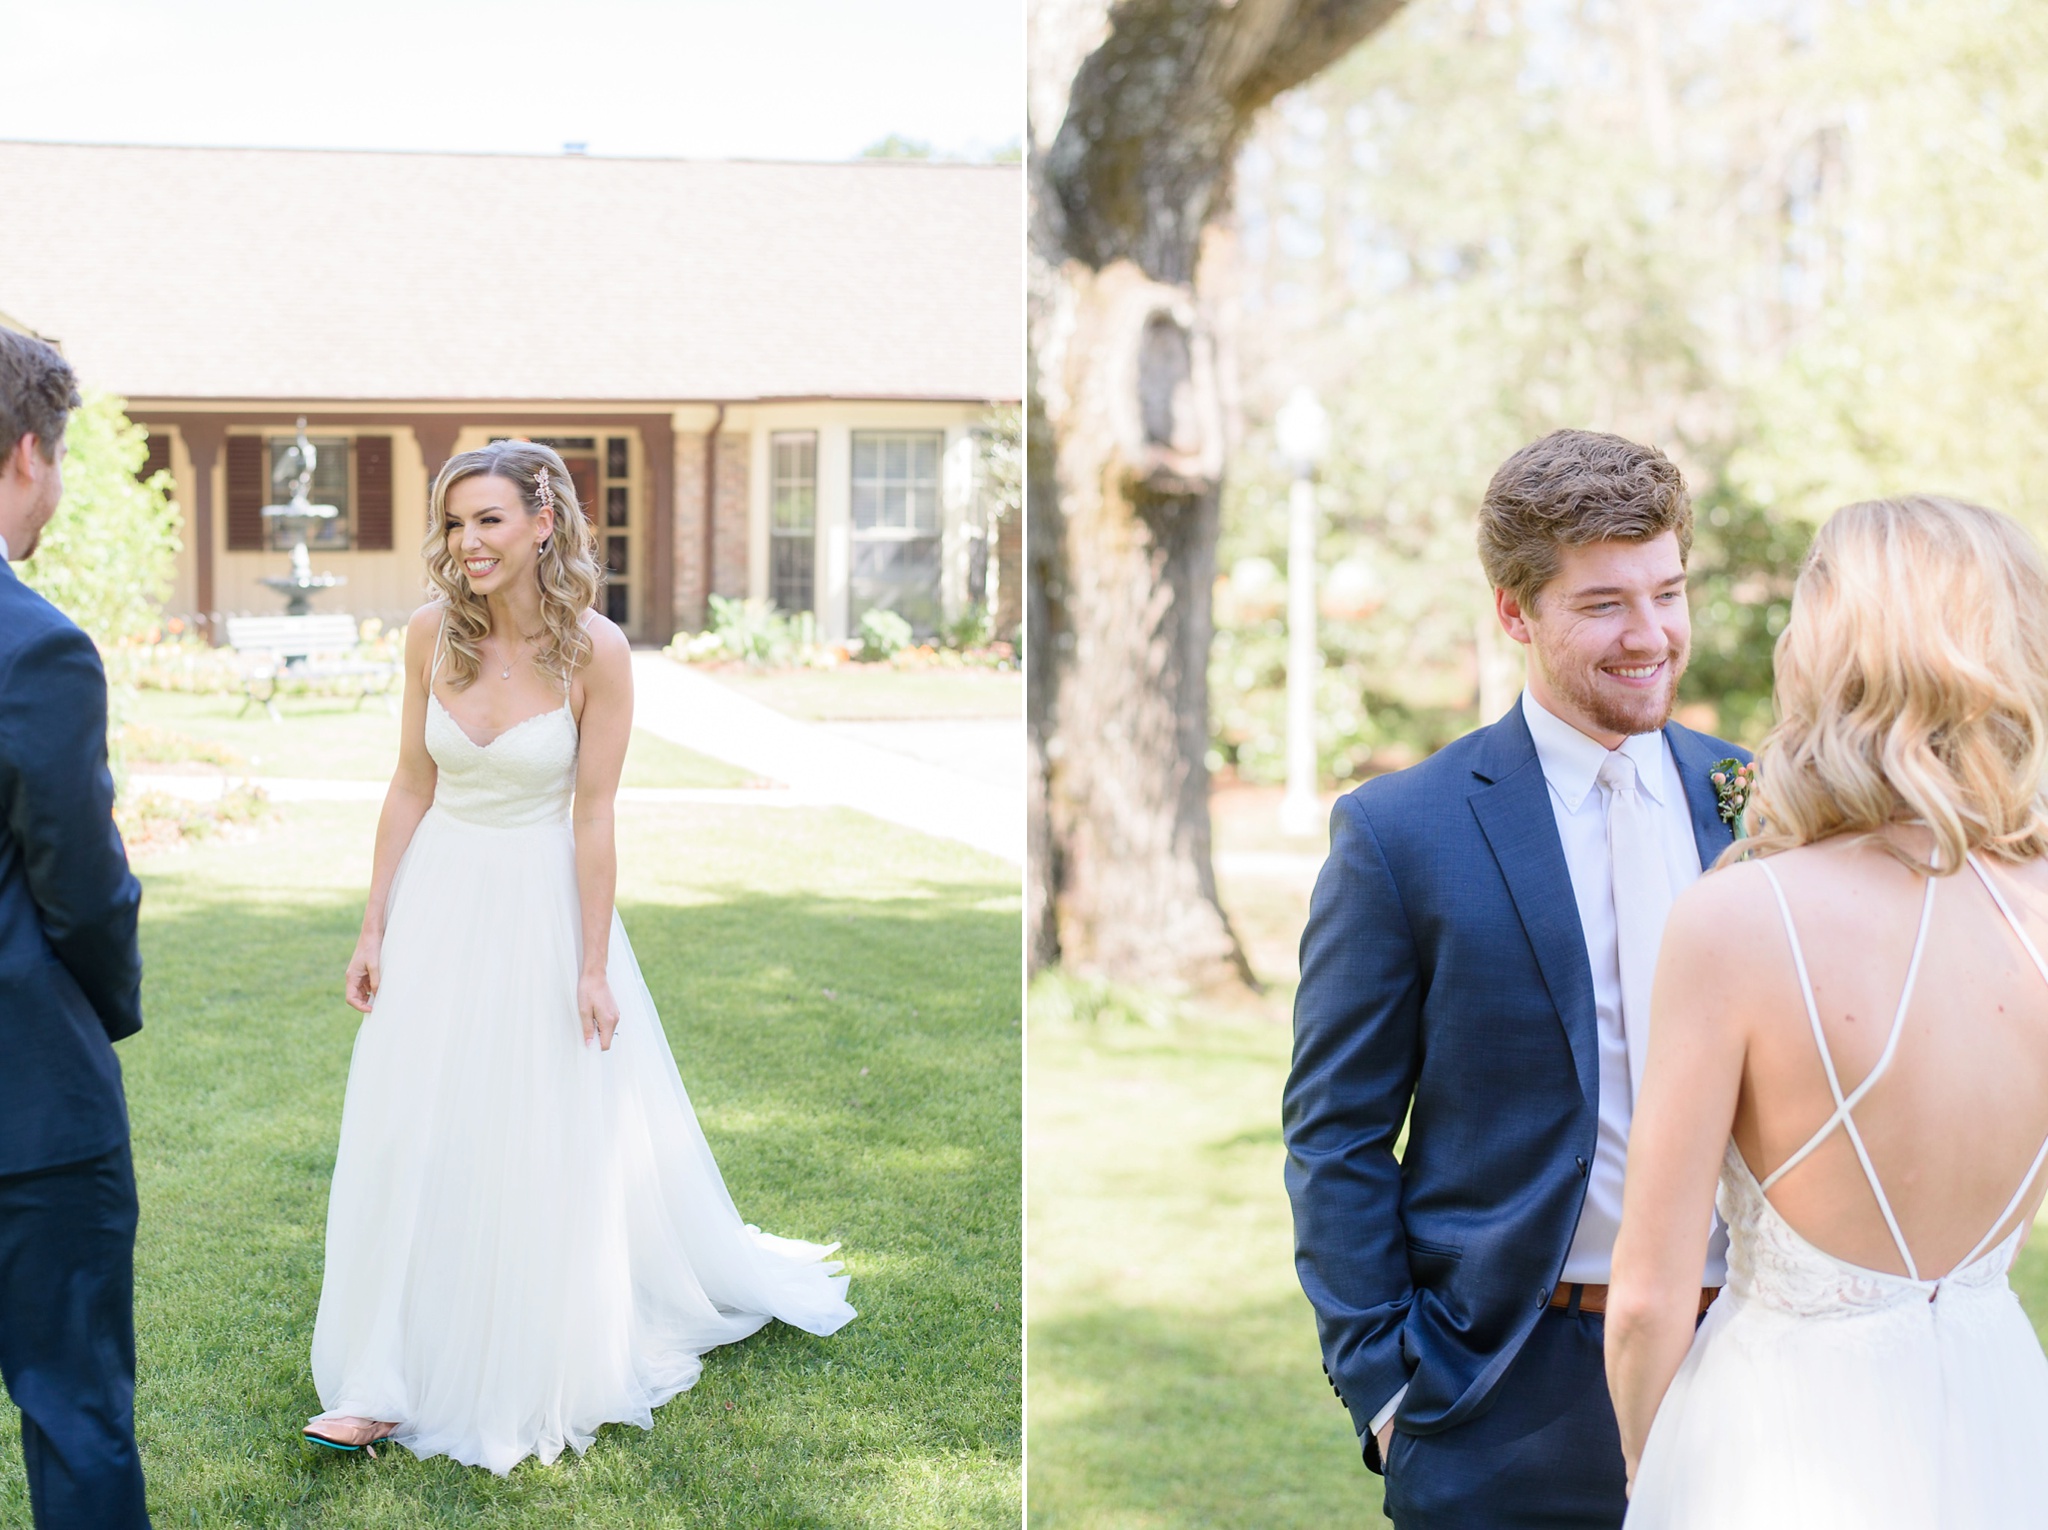 Aldridge Gardens Spring Wedding | Birmingham Alabama Wedding Photographers_0024.jpg